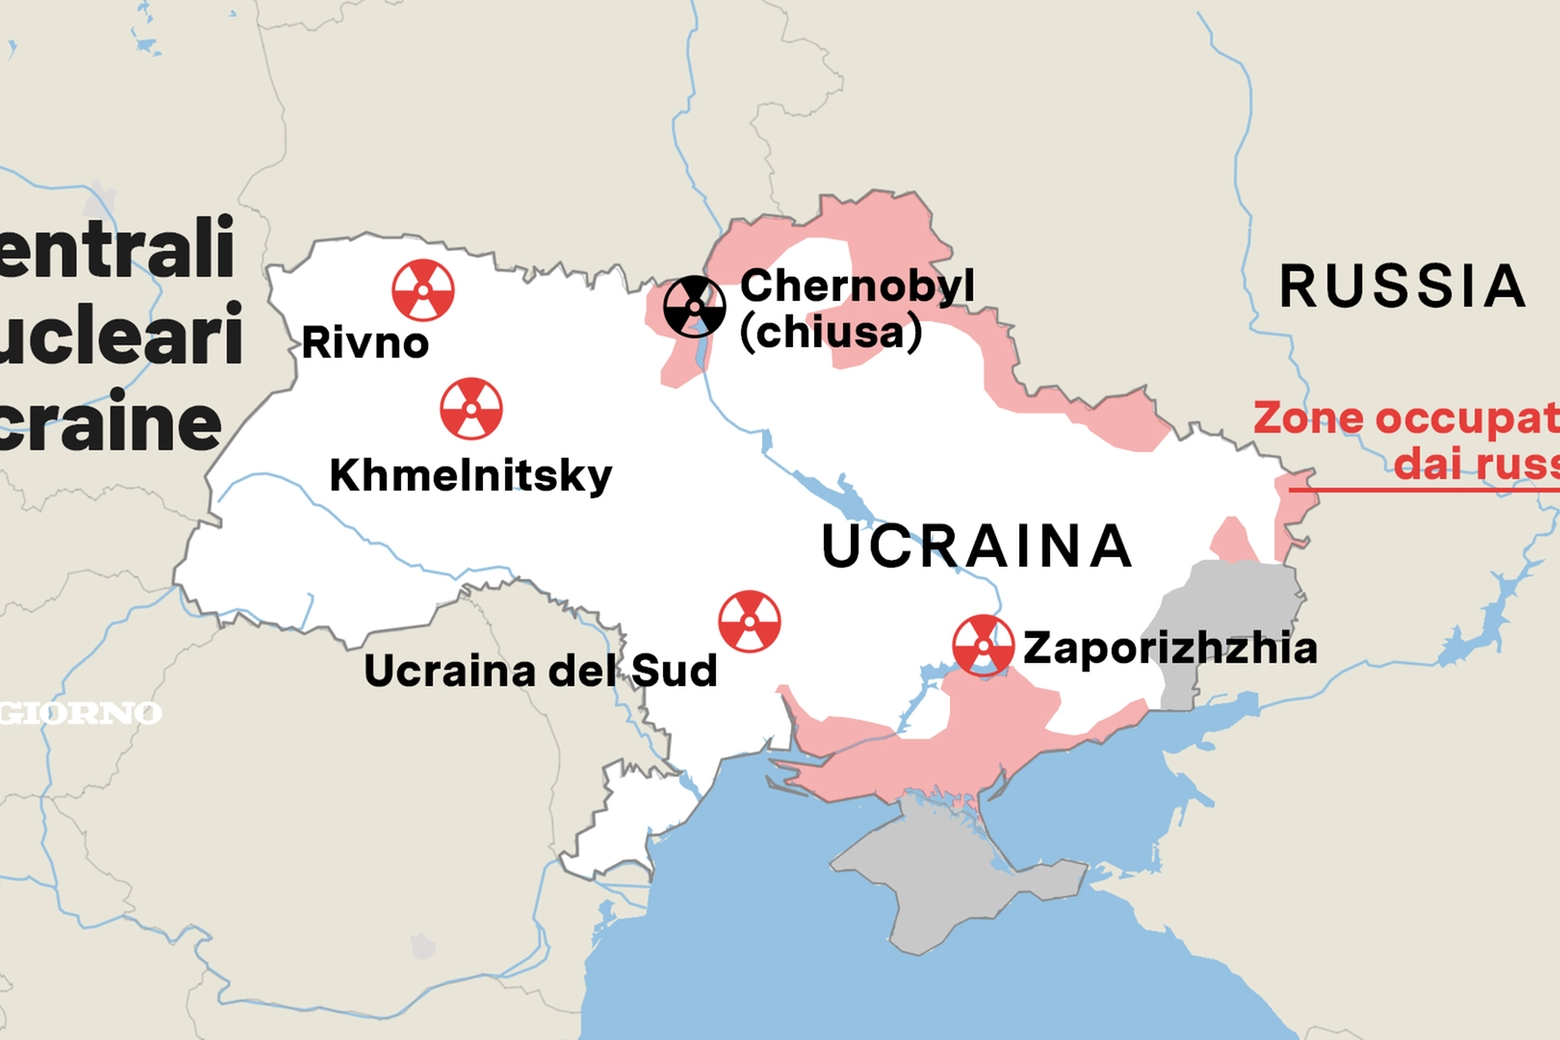 Le centrali nucleari ucraine